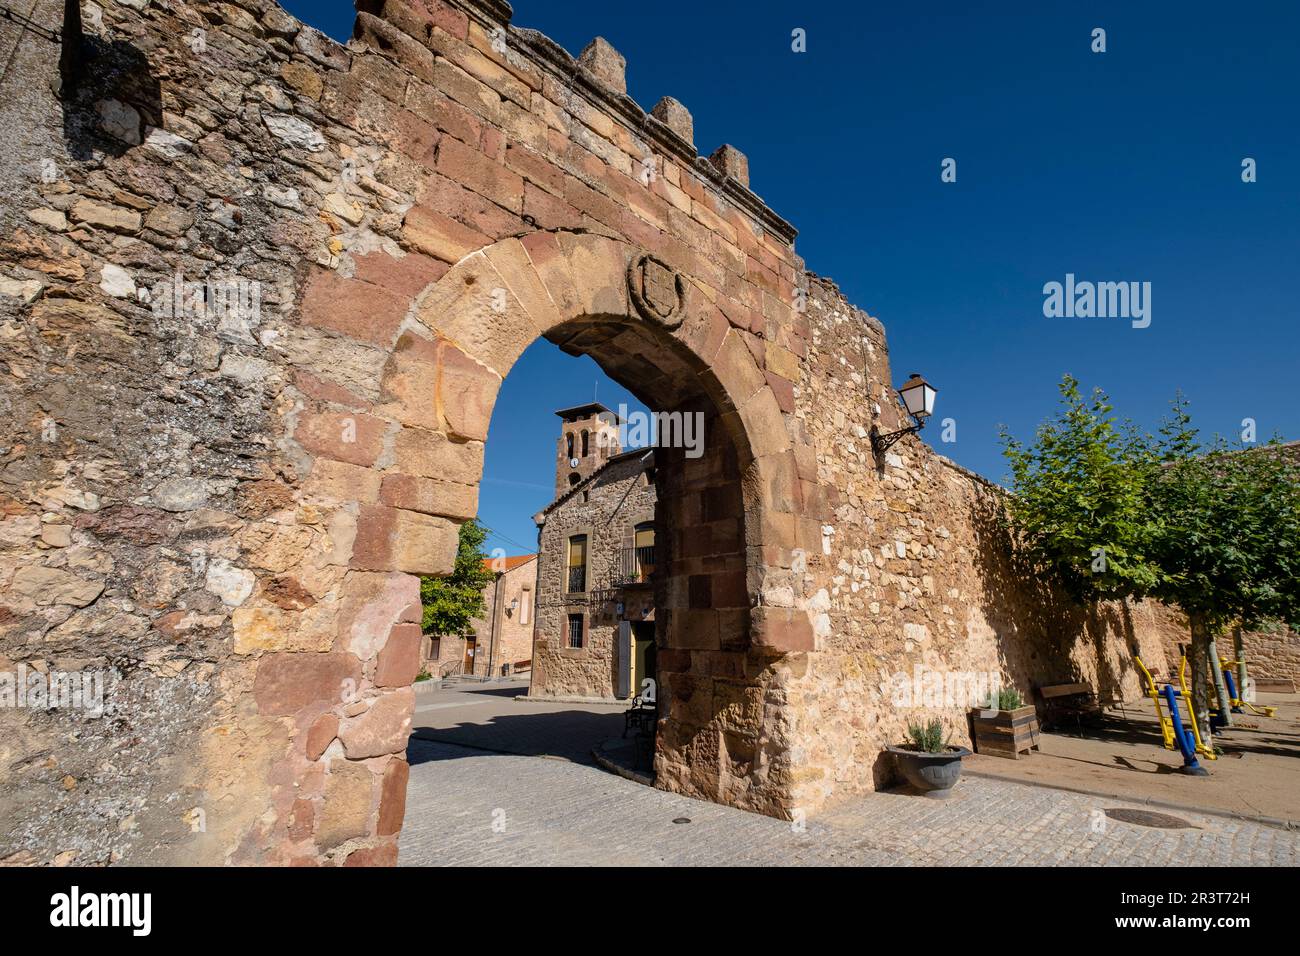 arco de arriba - puerta de oriente, Conjunto medieval amurallado, Retortillo de Soria, Soria, comunidad autónoma de Castilla y León, Spain, Europe. Stock Photo